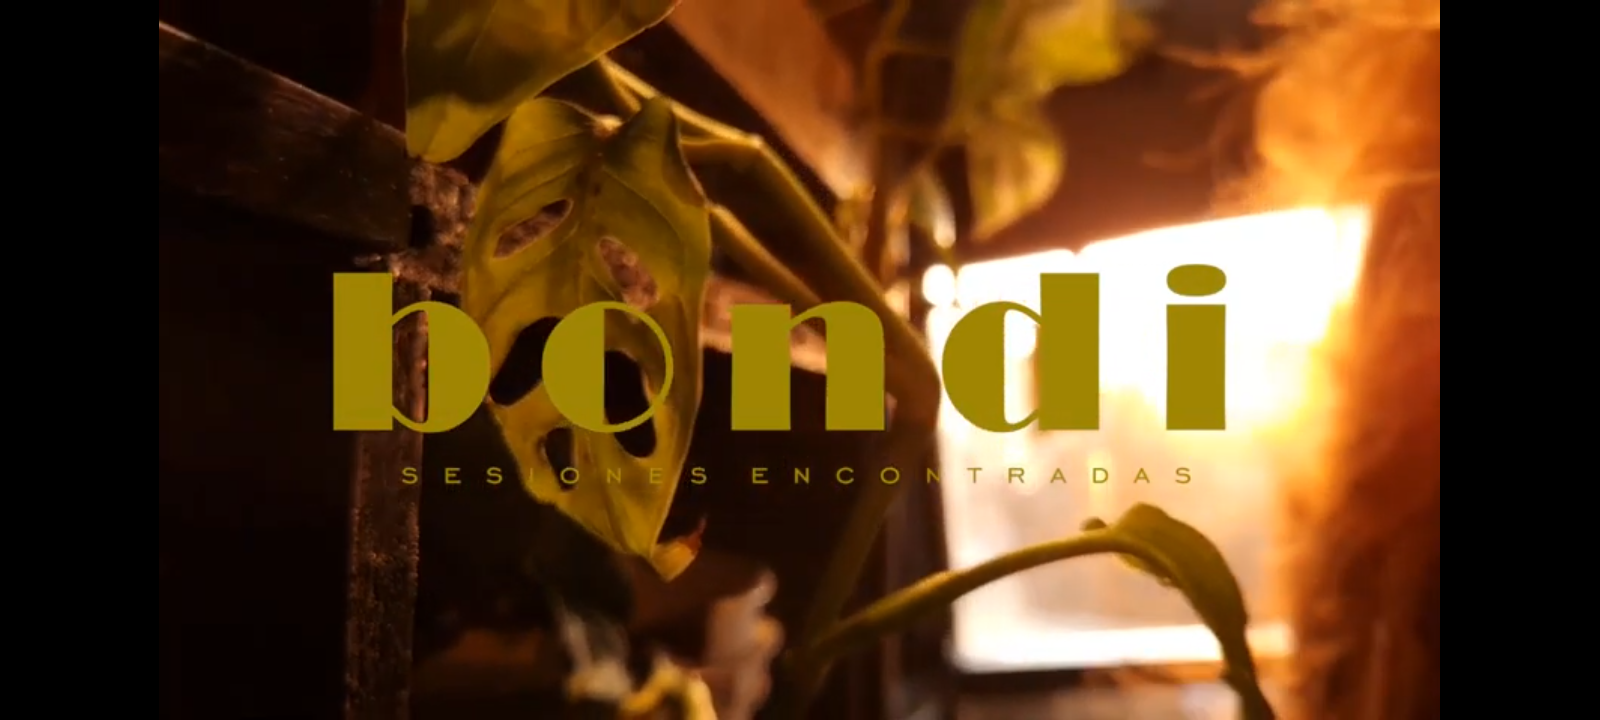  BONDI | SESIONES ENCONTRADAS